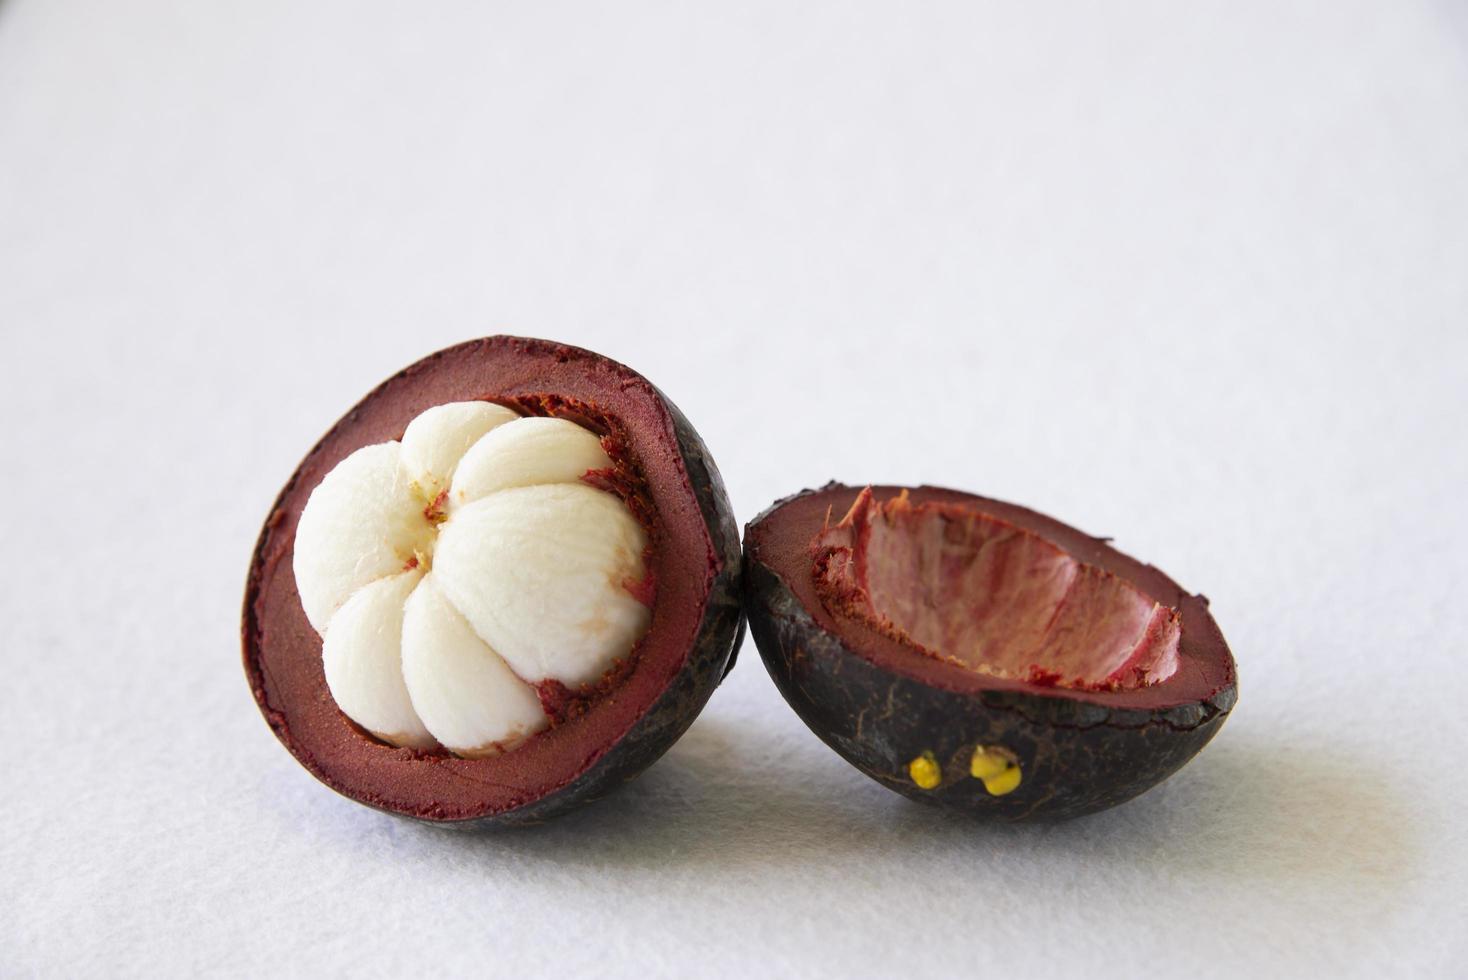 frutas populares tailandesas de mangostão - uma fruta tropical com segmentos brancos suculentos doces de carne dentro de uma casca marrom-avermelhada grossa. foto